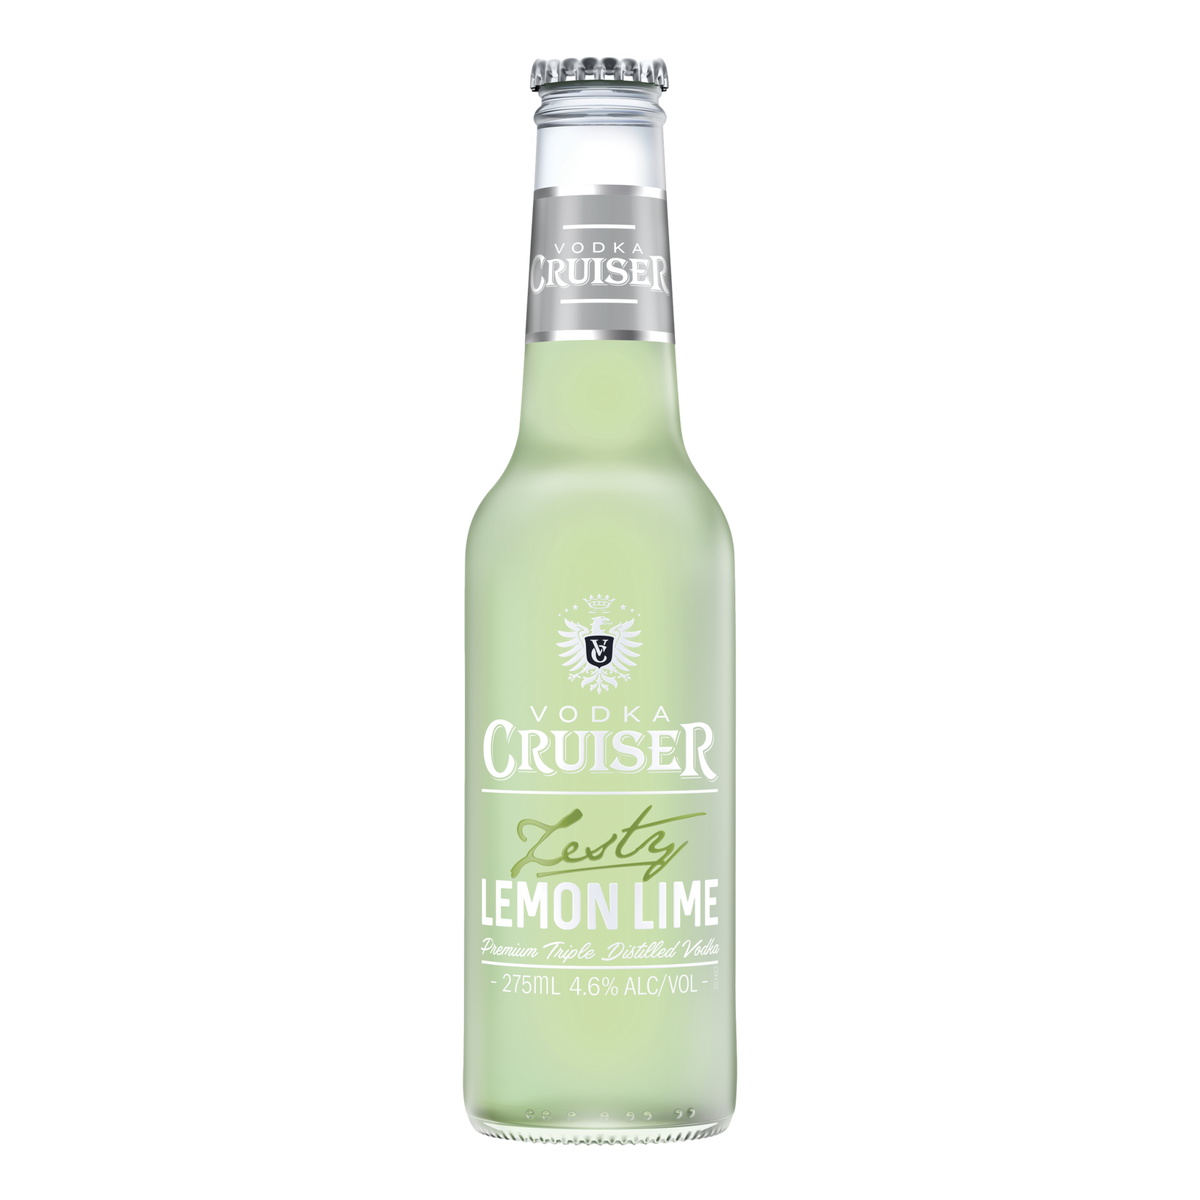 Vodka Cruiser Zesty Lemon Lime 275ml Bottle Case of 24